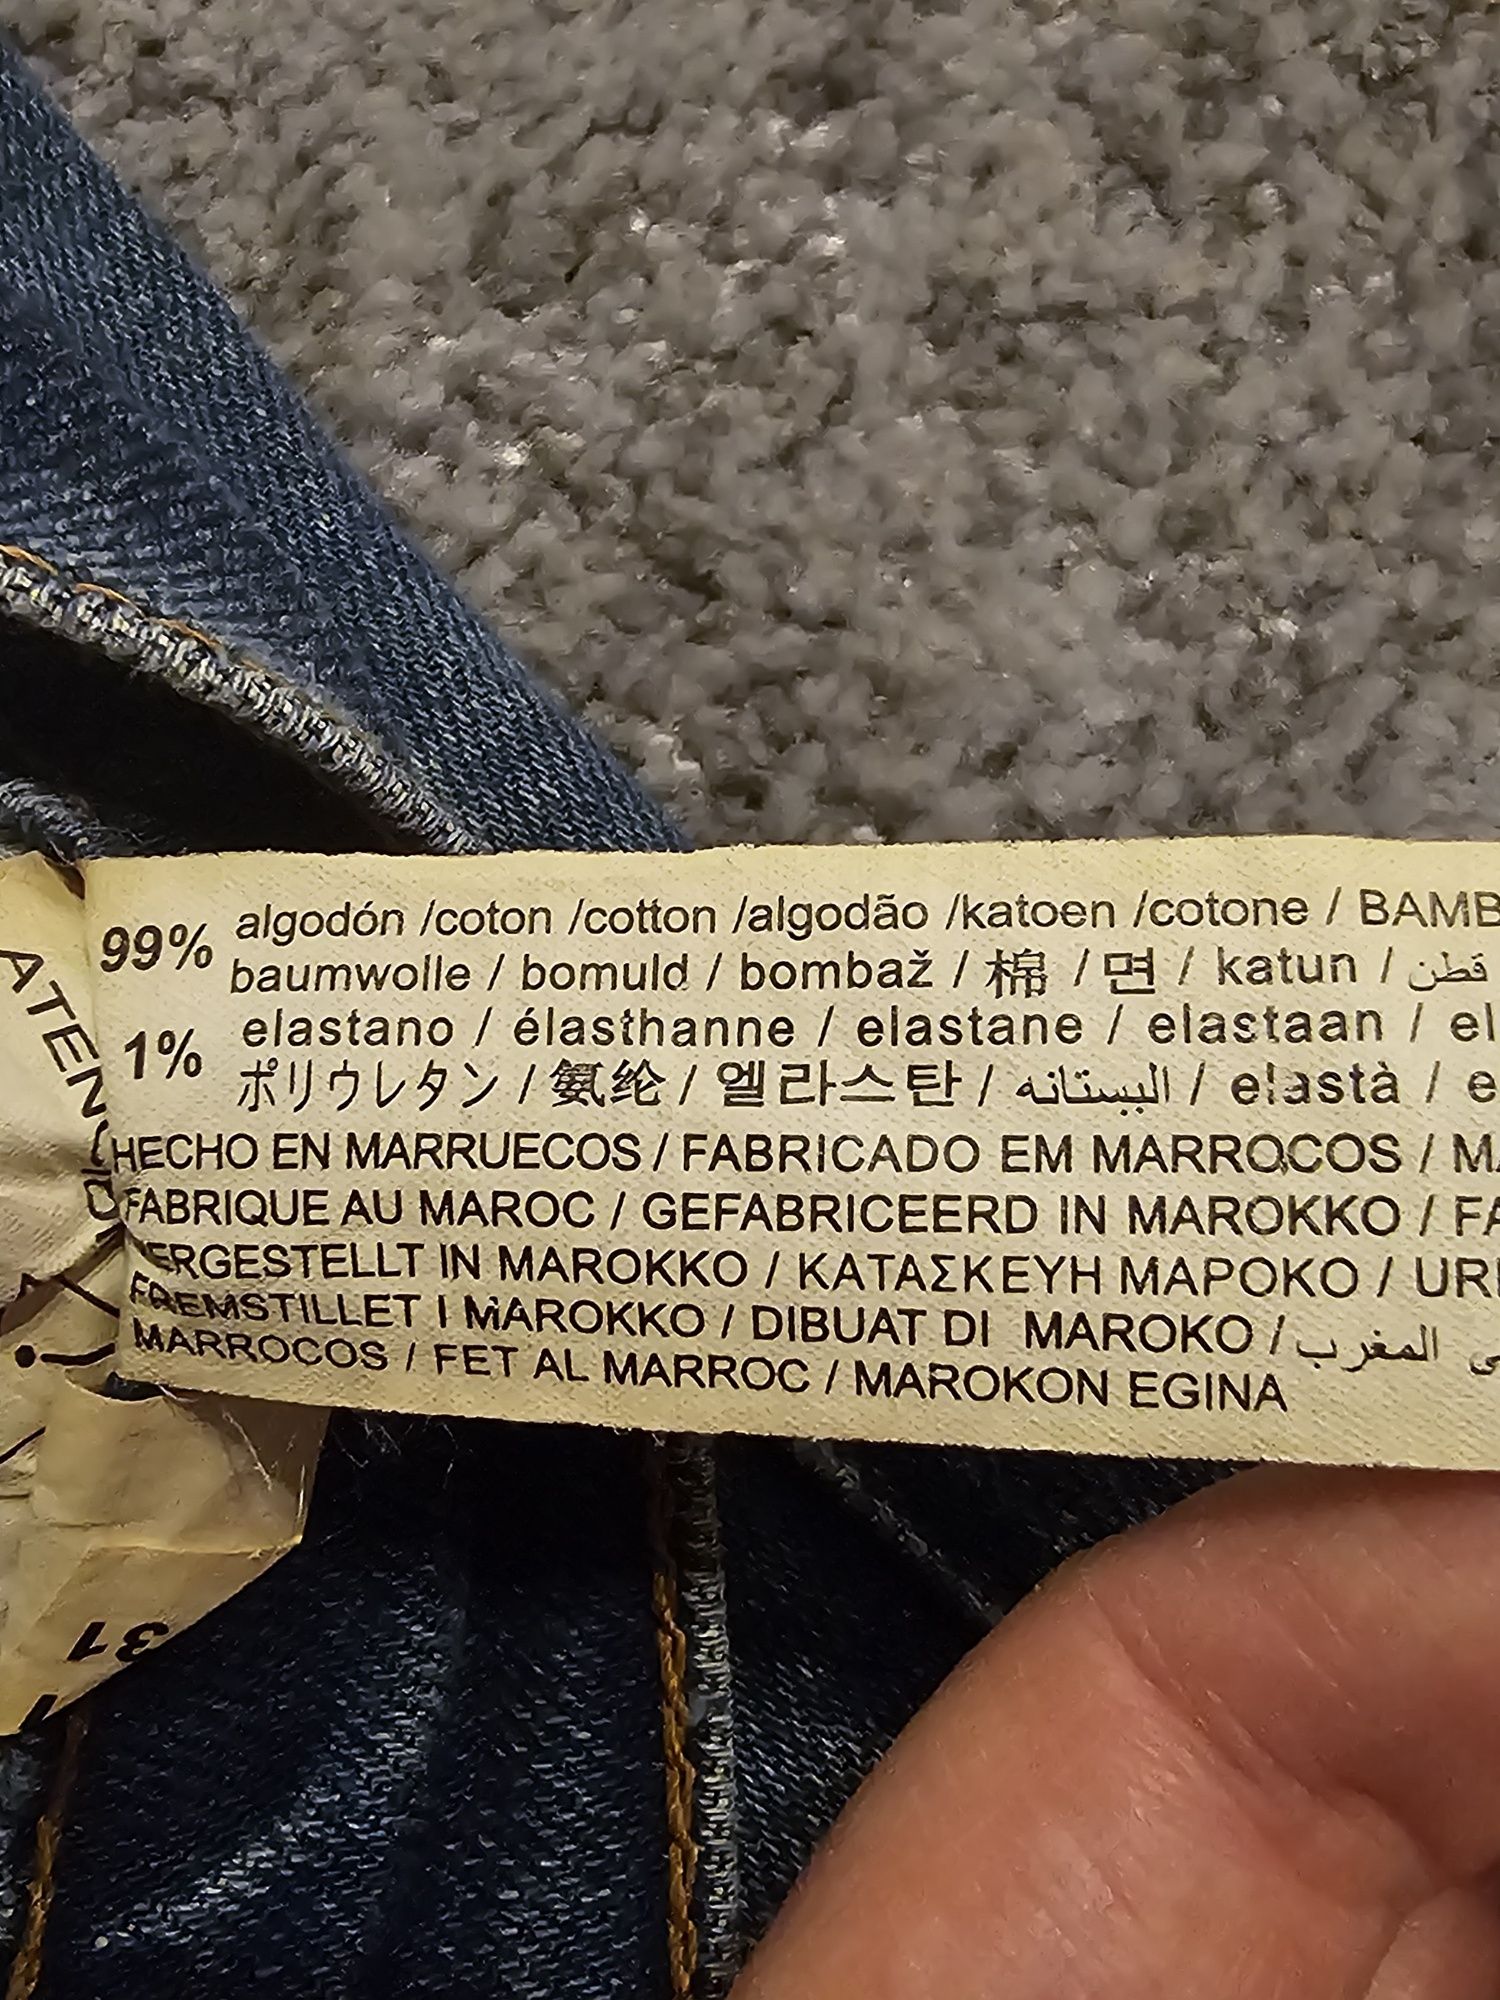 Jeans Zara man
99% cotton